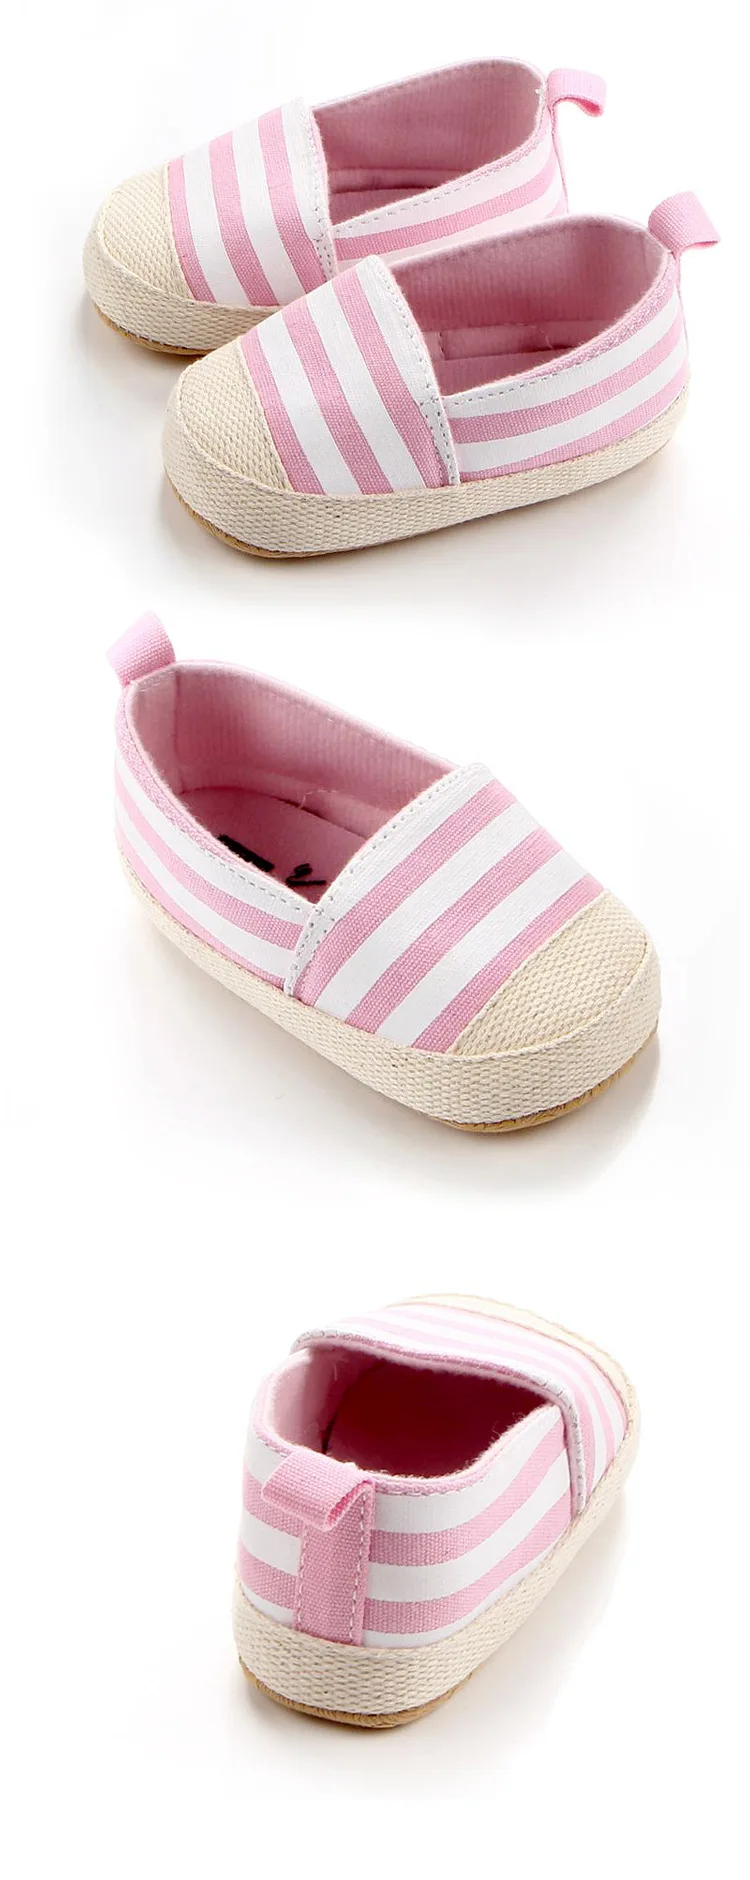 Ночная одежда для маленьких мальчиков и девочек, одежда для сна, обувь из плотной ткани в полоску для новорожденных; для детей 0-12 мес., комплект мягкой подошве противоскользящие дизайнерские новорожденных обувь детская Мокасины F29